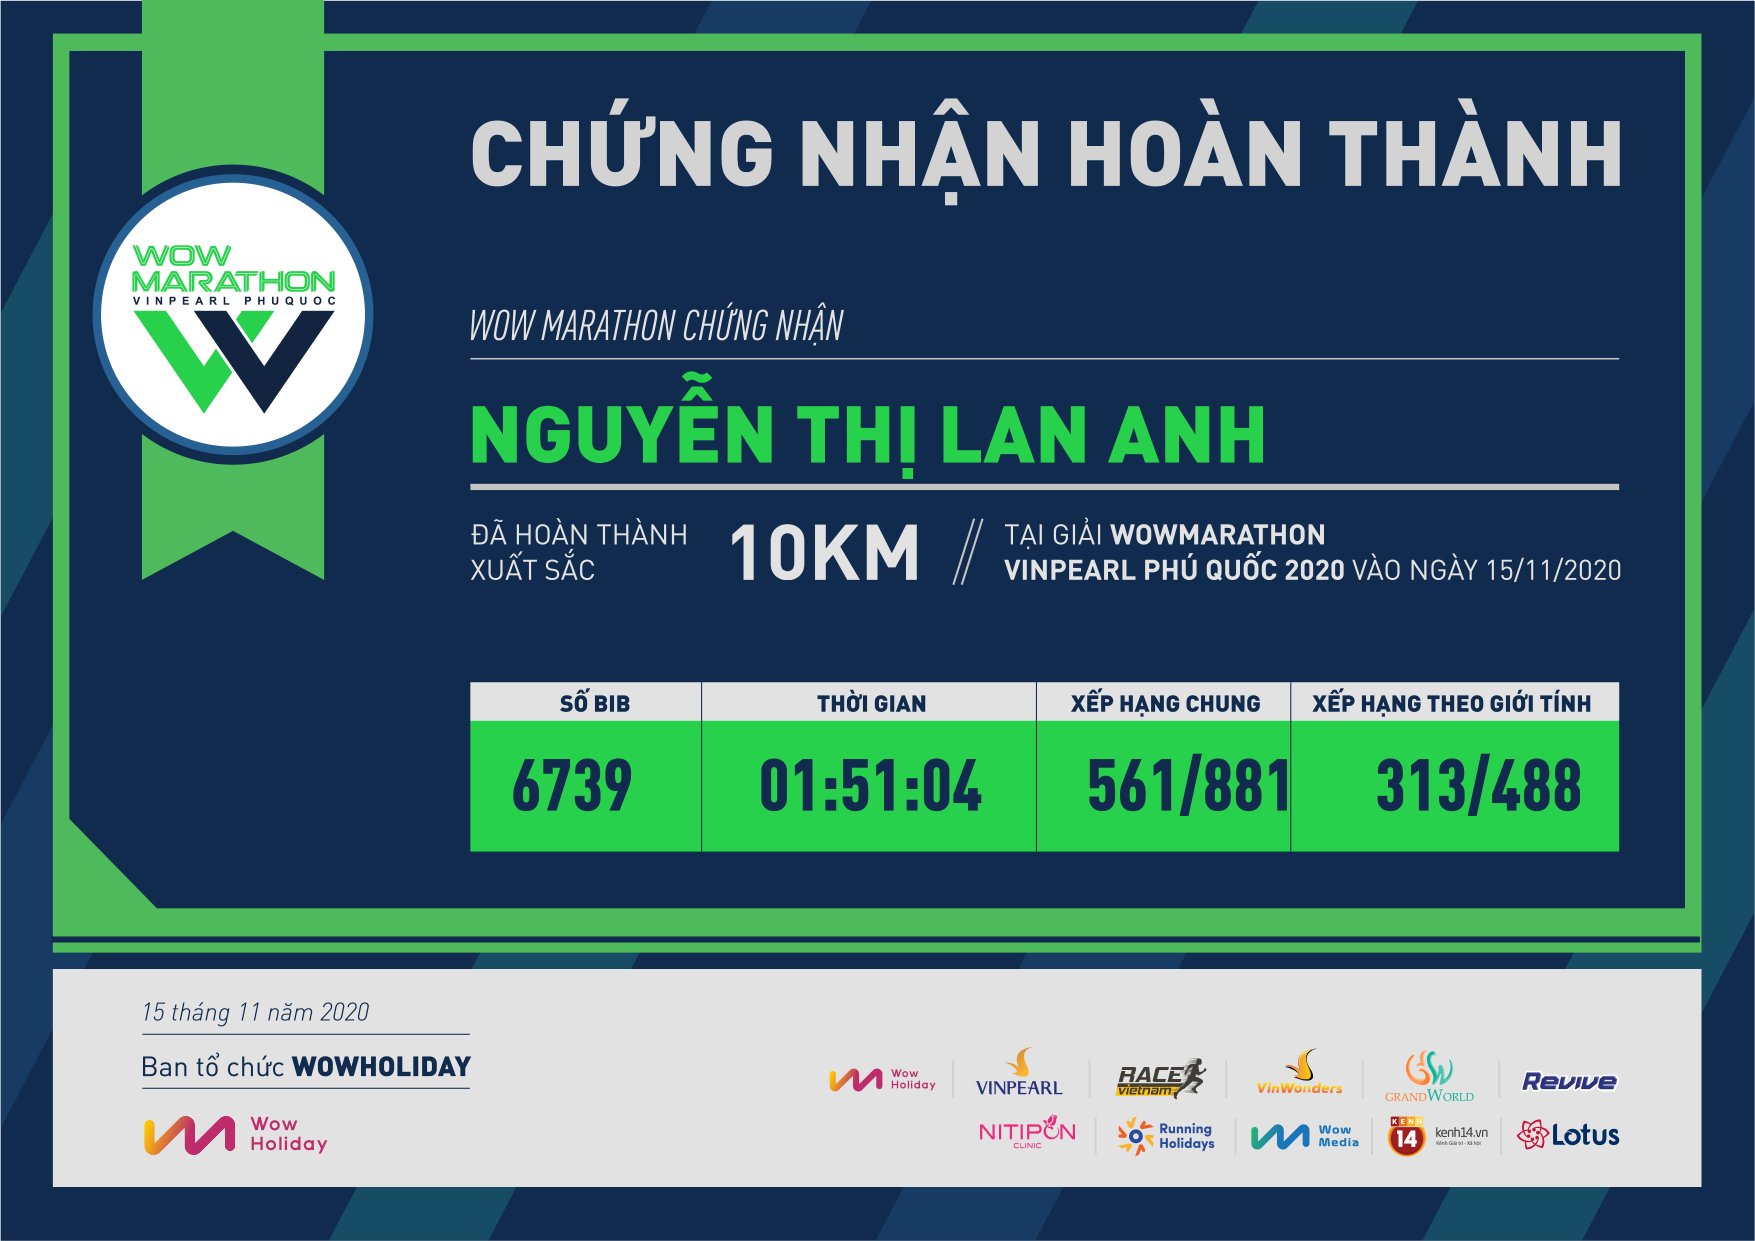 6739 - Nguyễn Thị Lan Anh